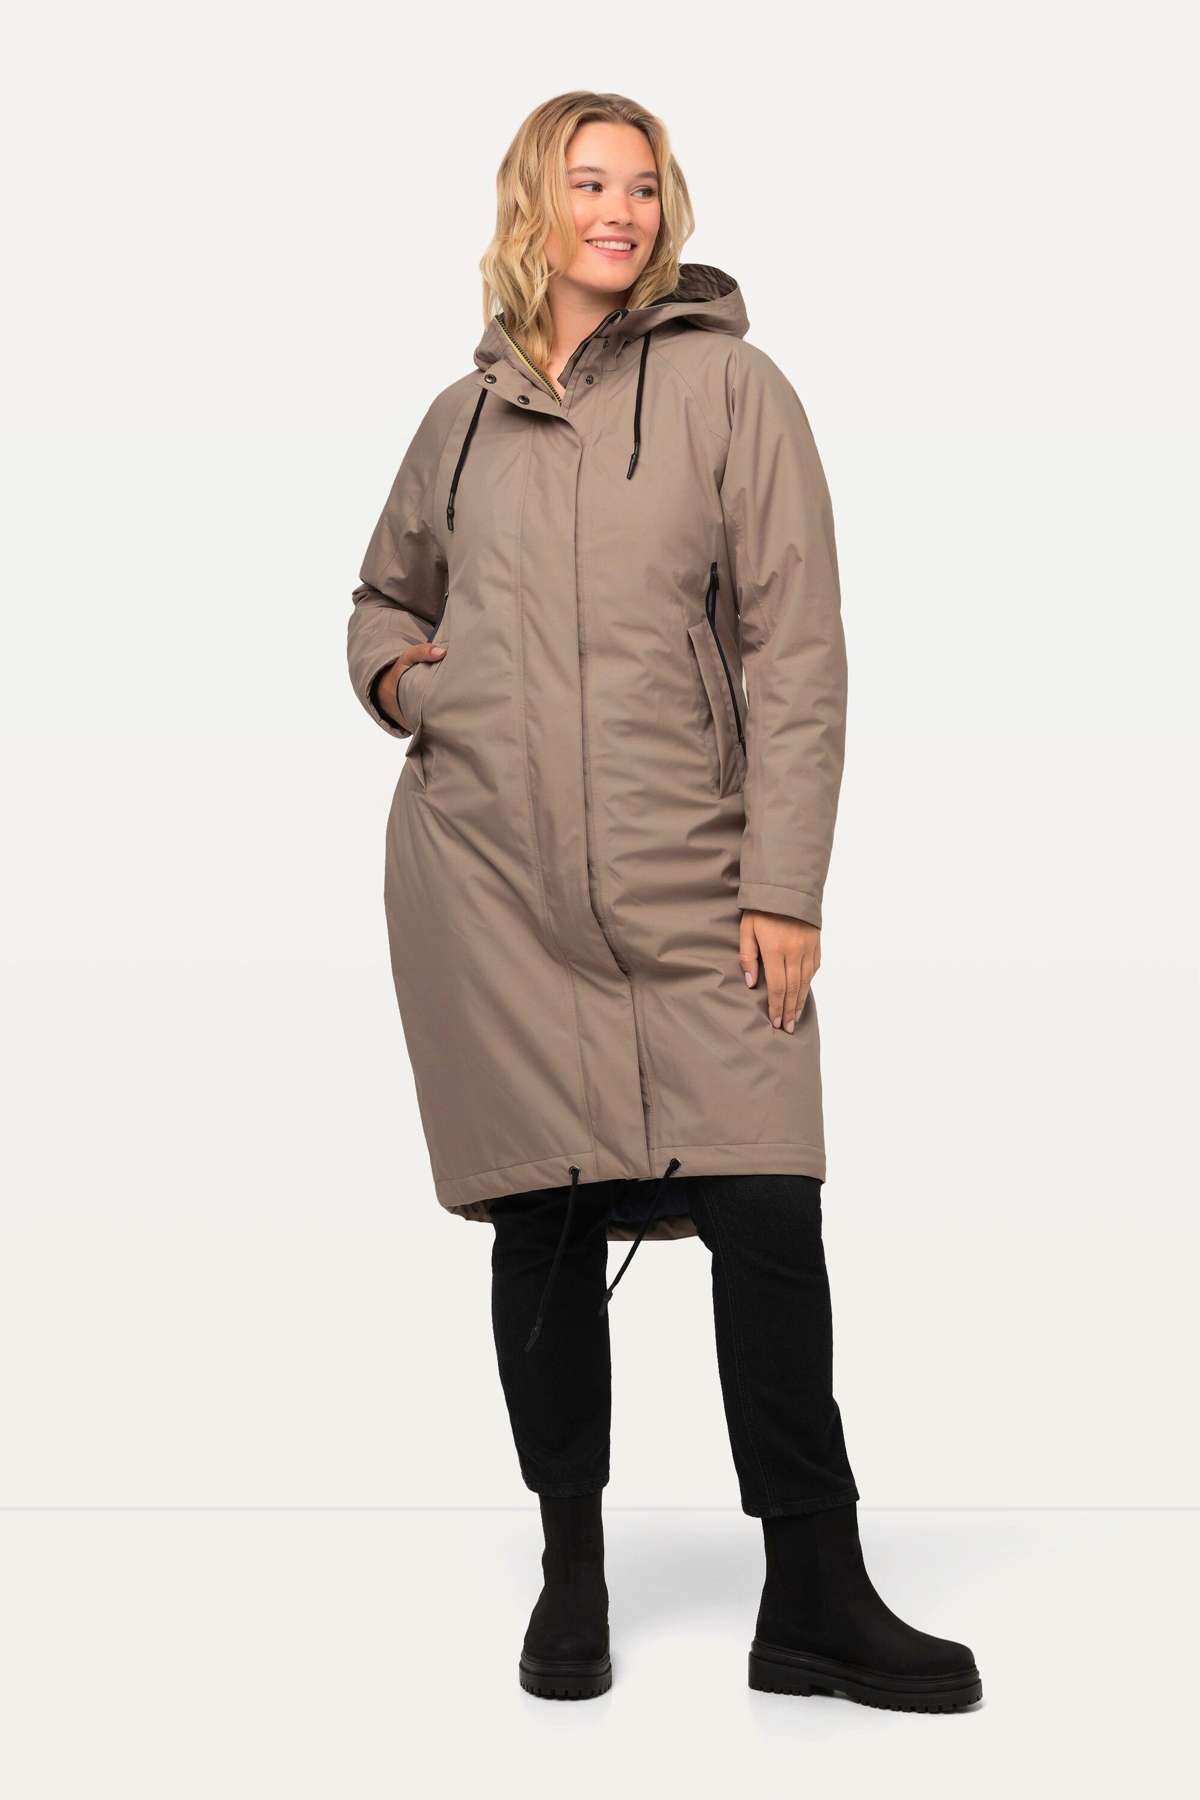 Функциональная куртка HYPRAR, функциональное пальто, капюшон, двусторонняя молния.